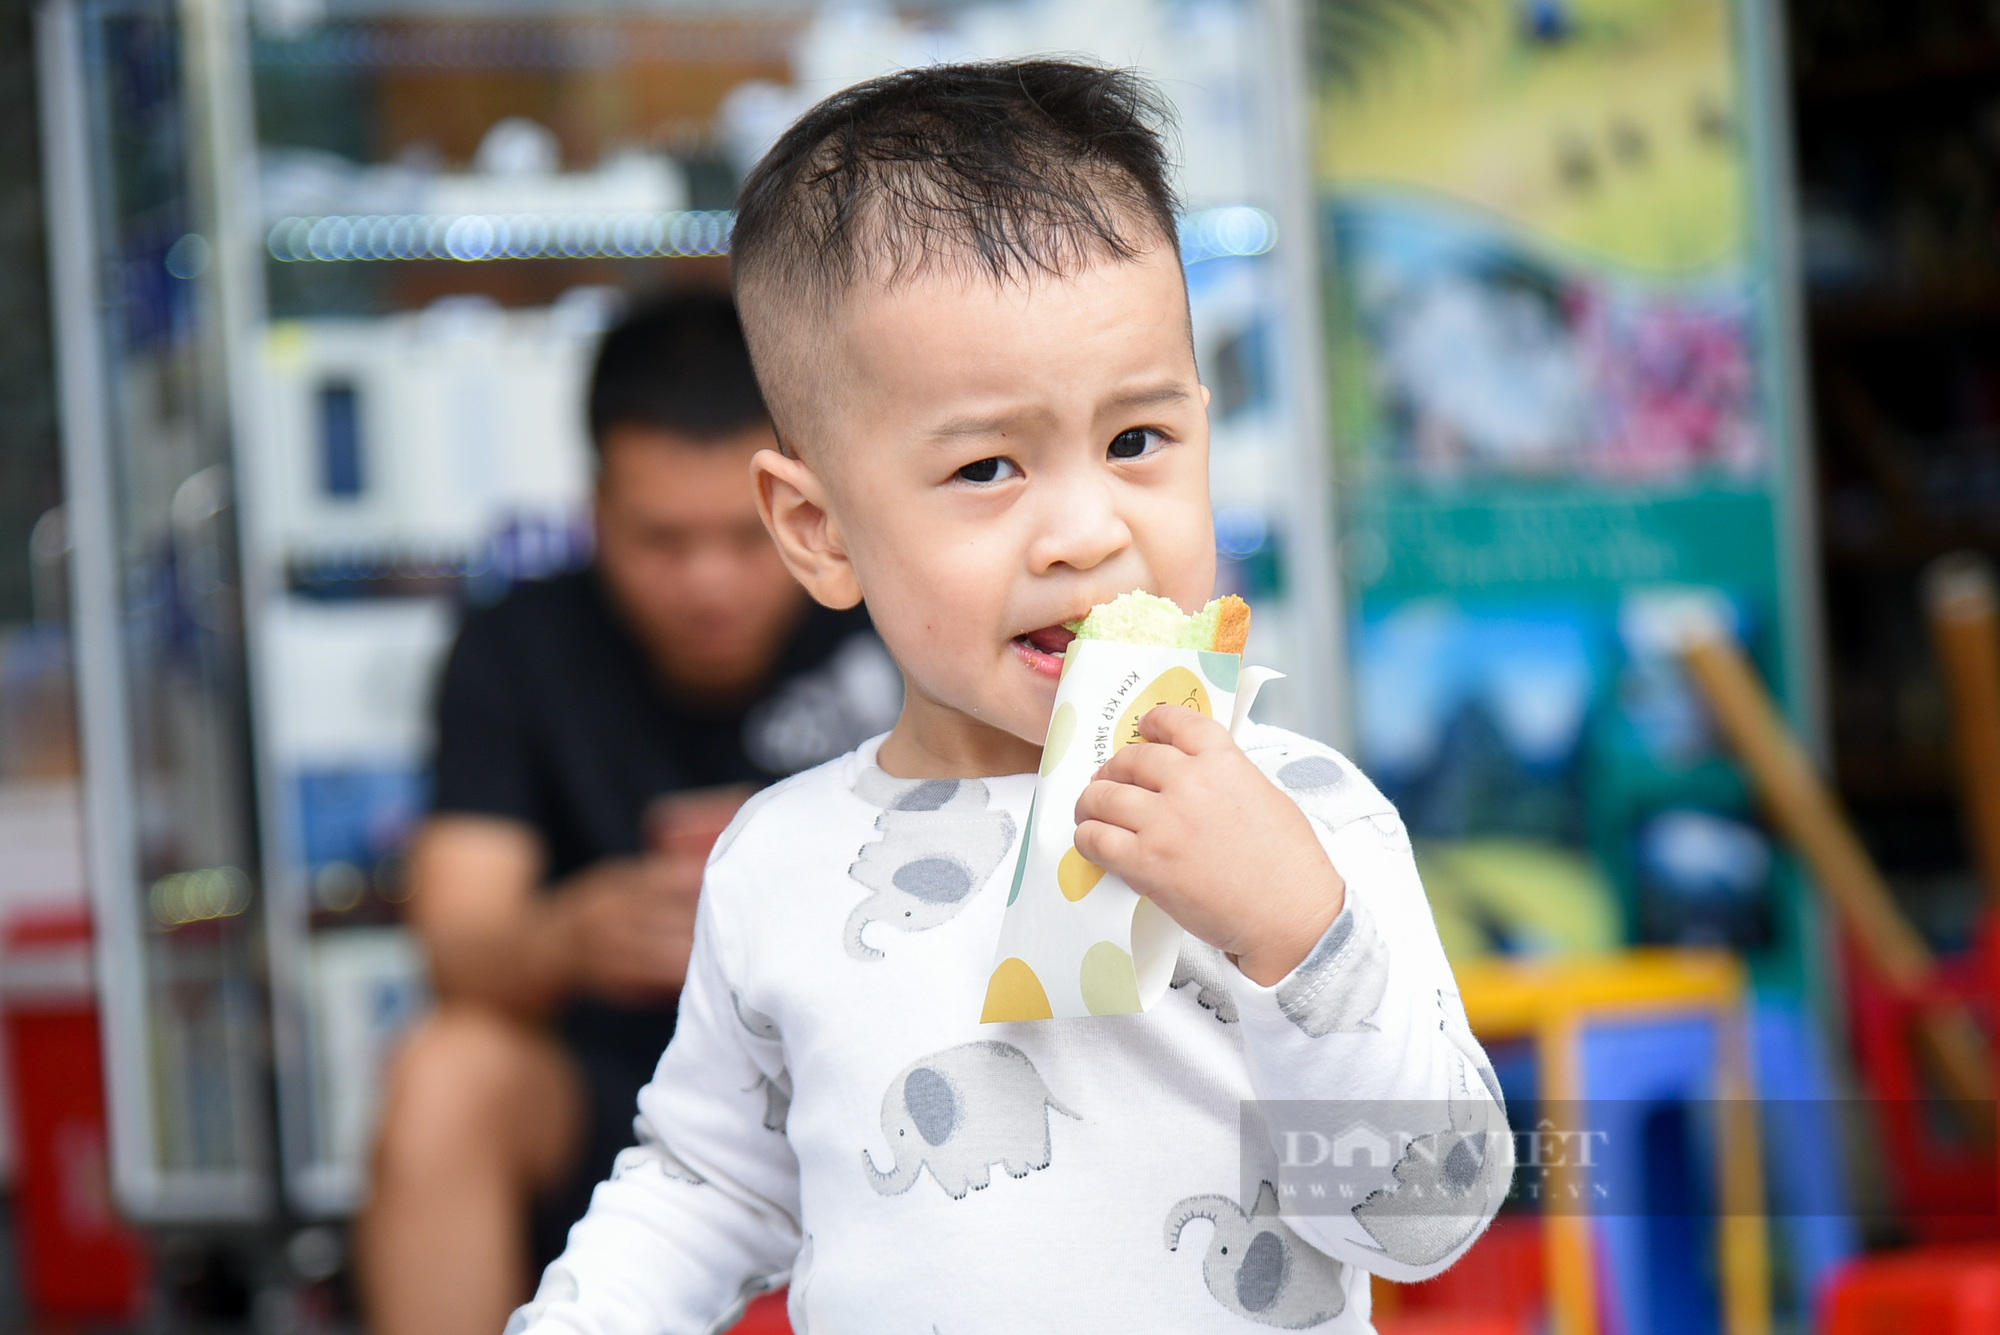 Kem kẹp Singapore lạ miệng thu hút giới trẻ Hà Nội - Ảnh 8.